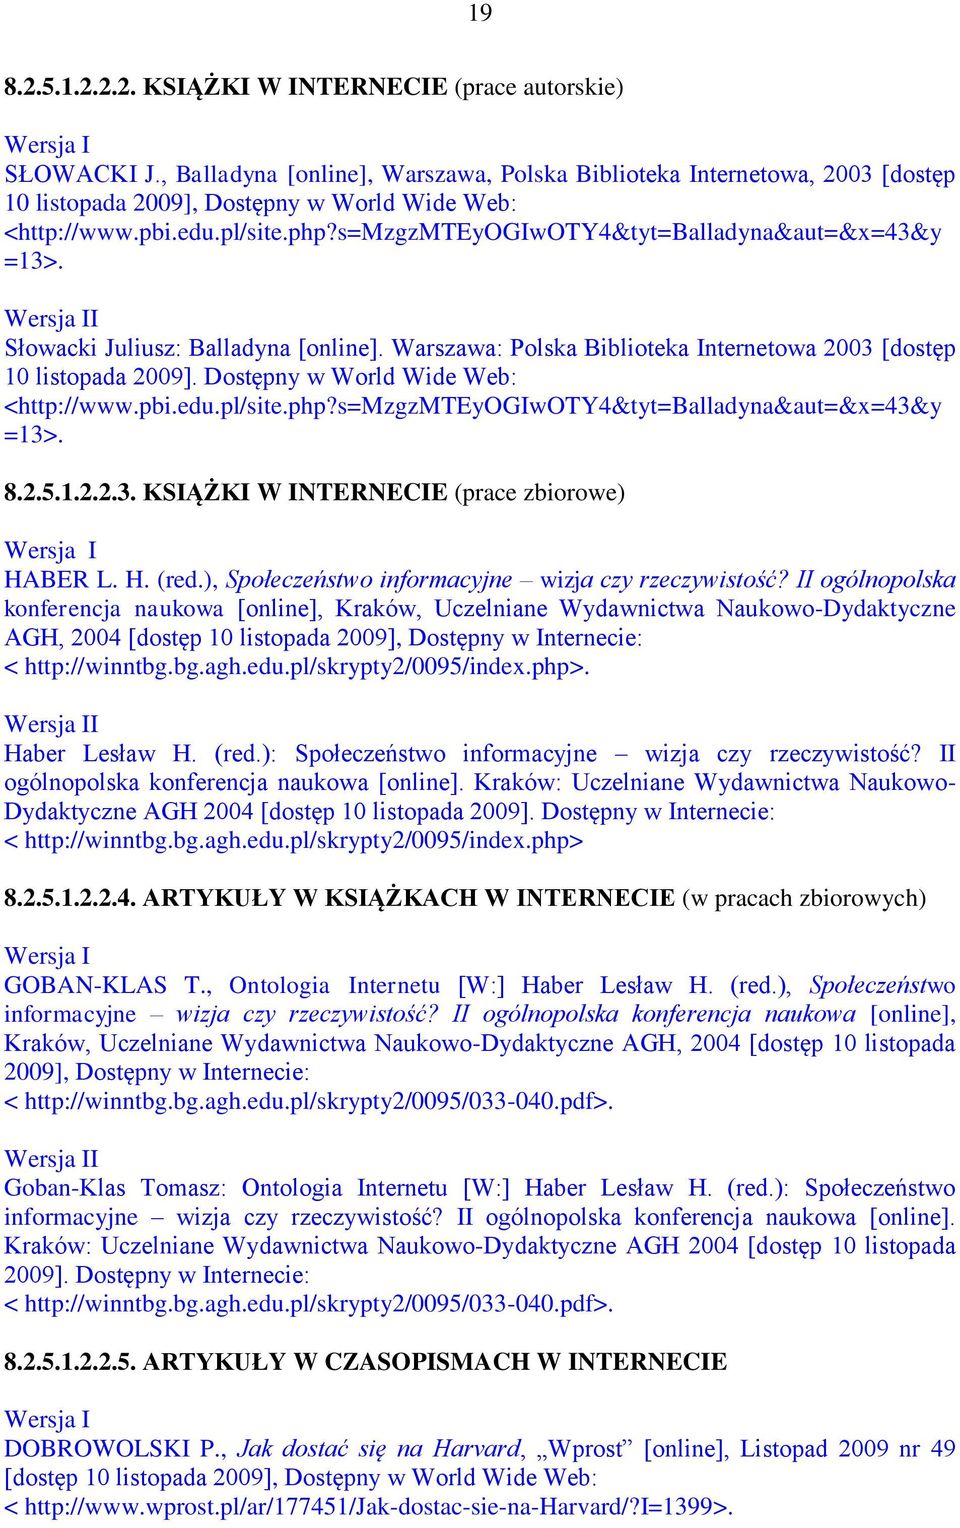 s=mzgzmteyogiwoty4&tyt=balladyna&aut=&x=43&y =13>. Słowacki Juliusz: Balladyna [online]. Warszawa: Polska Biblioteka Internetowa 2003 [dostęp 10 listopada 2009].